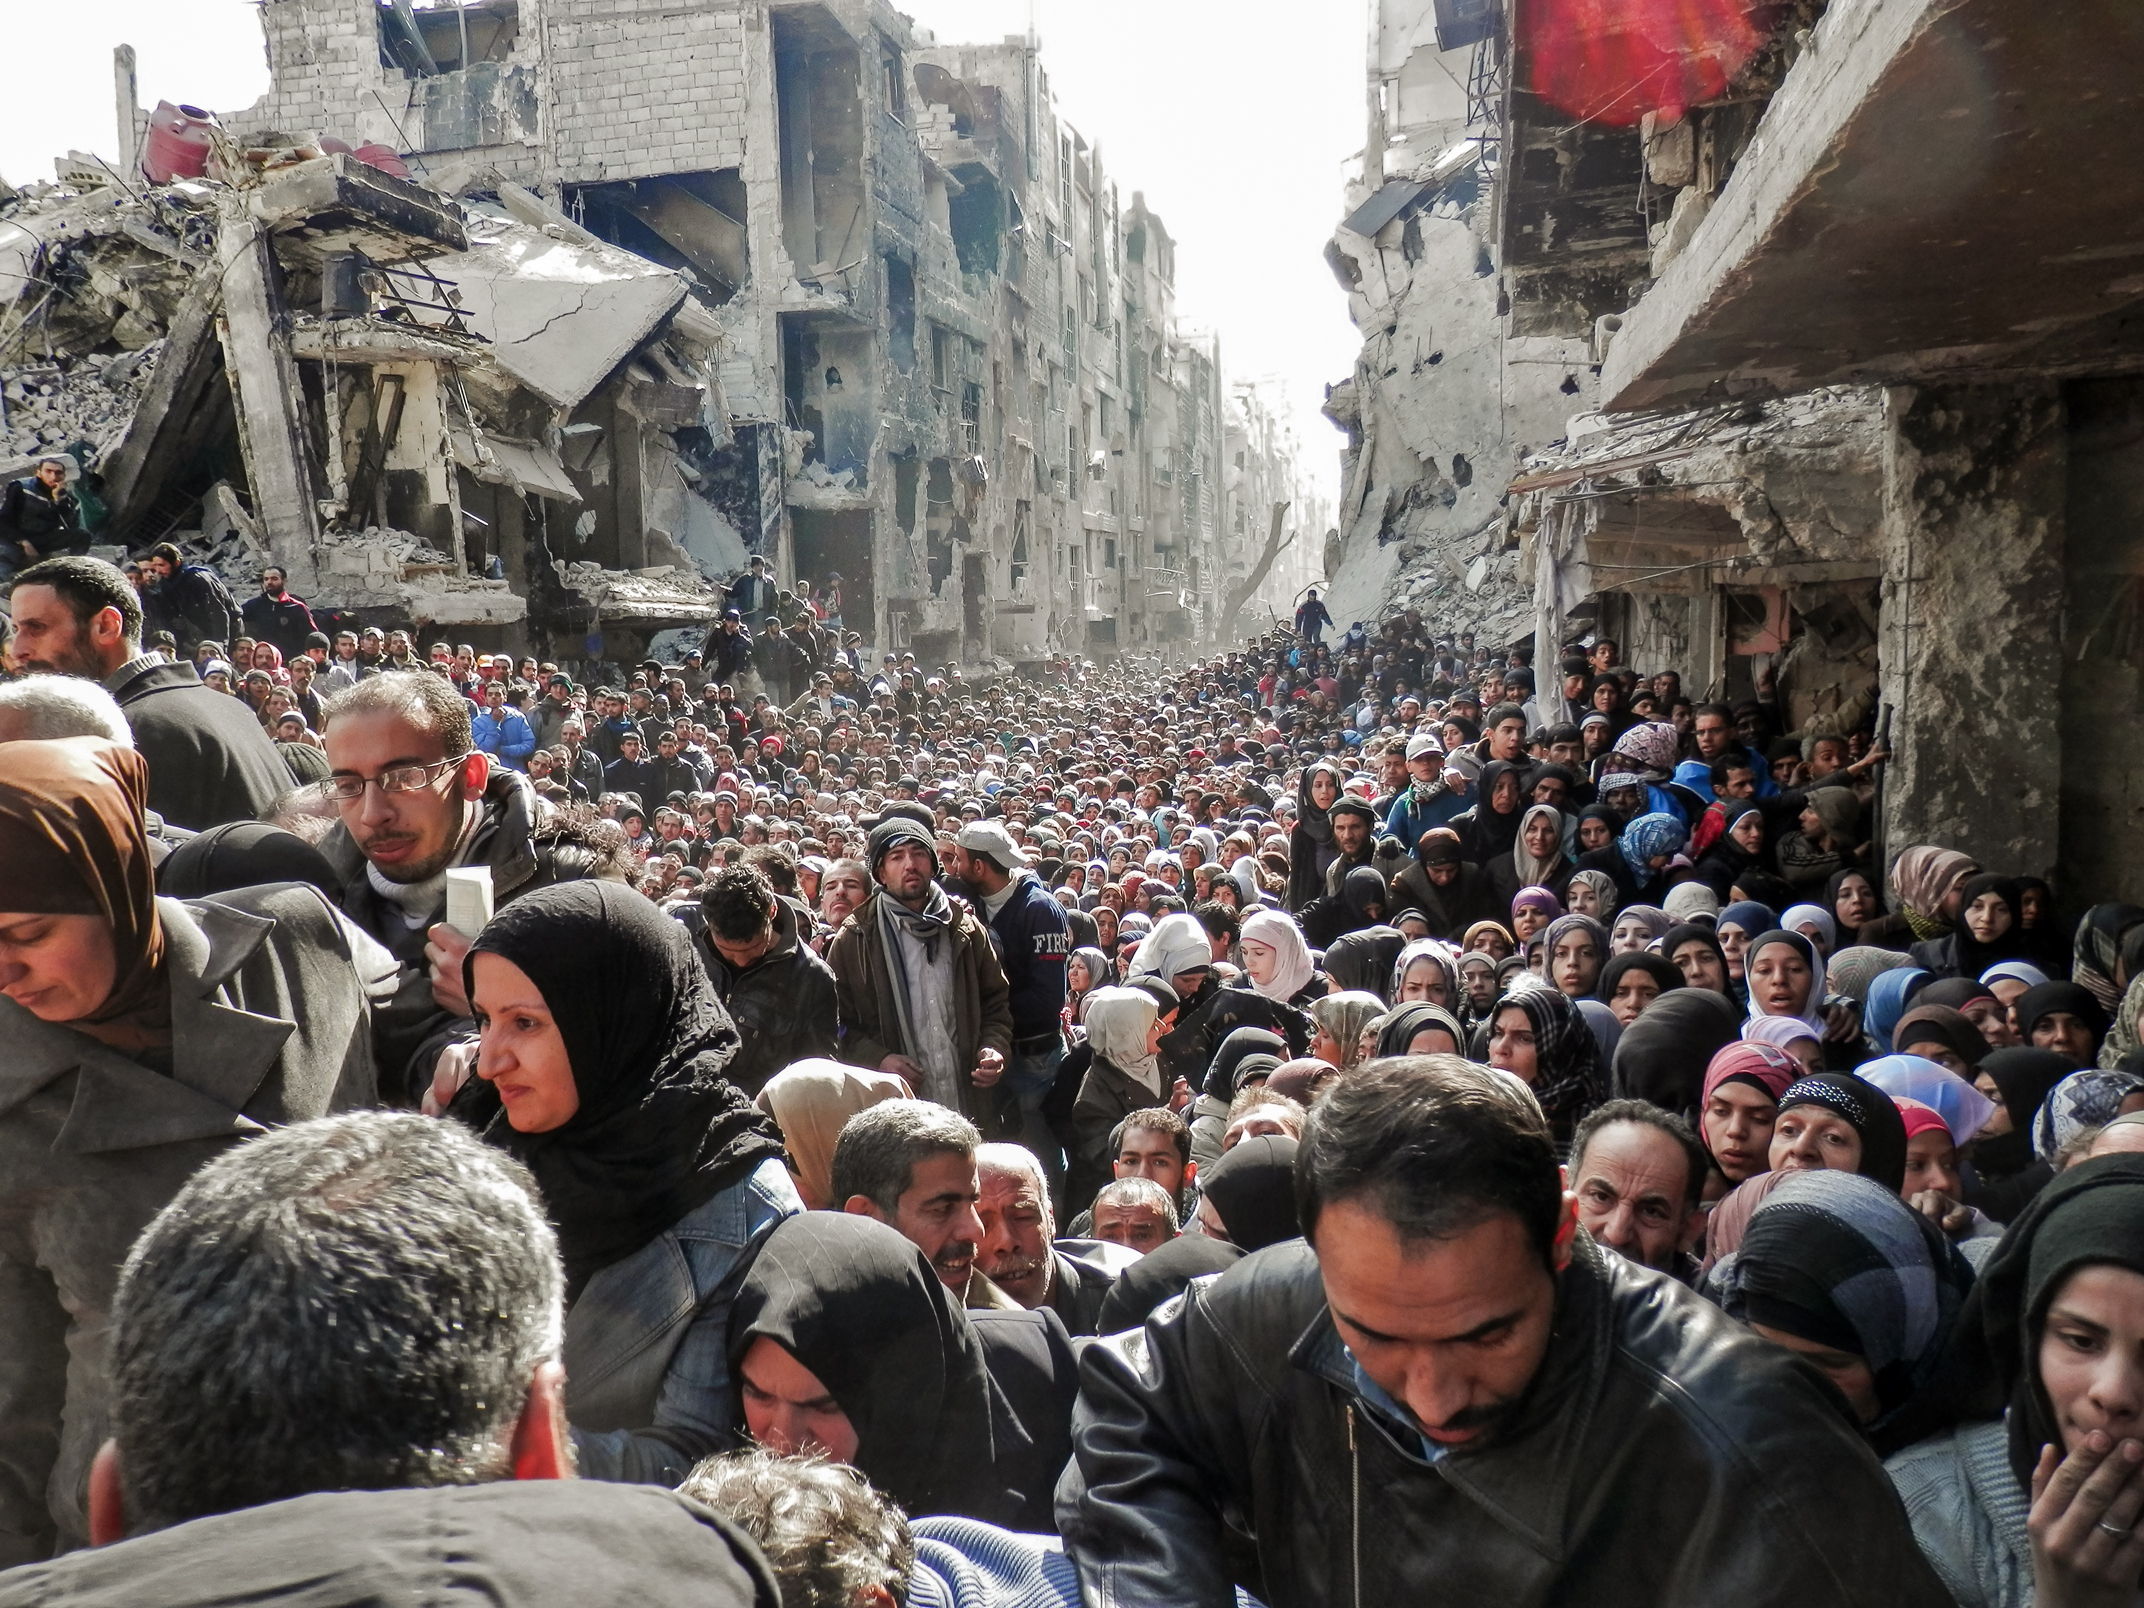 Người dân xếp hàng chờ nhận lương thực viện trợ được phân phát tại trại tị nạn Yarmouk ở Damascus, Syria, vào ngày 31/01/2014. (Ảnh: Cơ quan Liên Hiệp Quốc về Cứu trợ và Việc làm qua Getty Images)